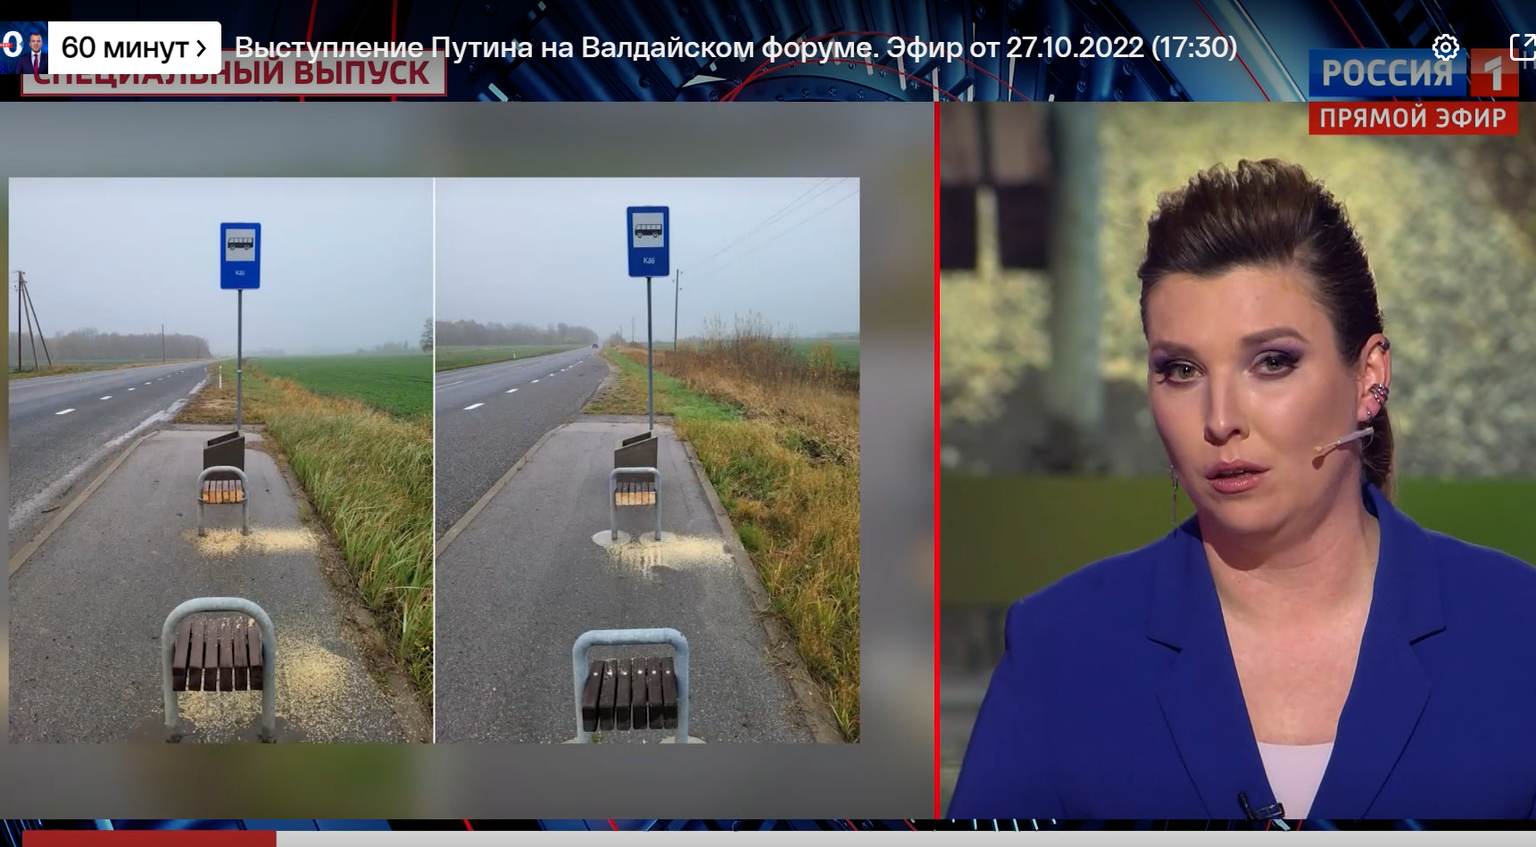 Скриншот из сюжета передачи "60 минут" о распиленных скамейках в Латвии